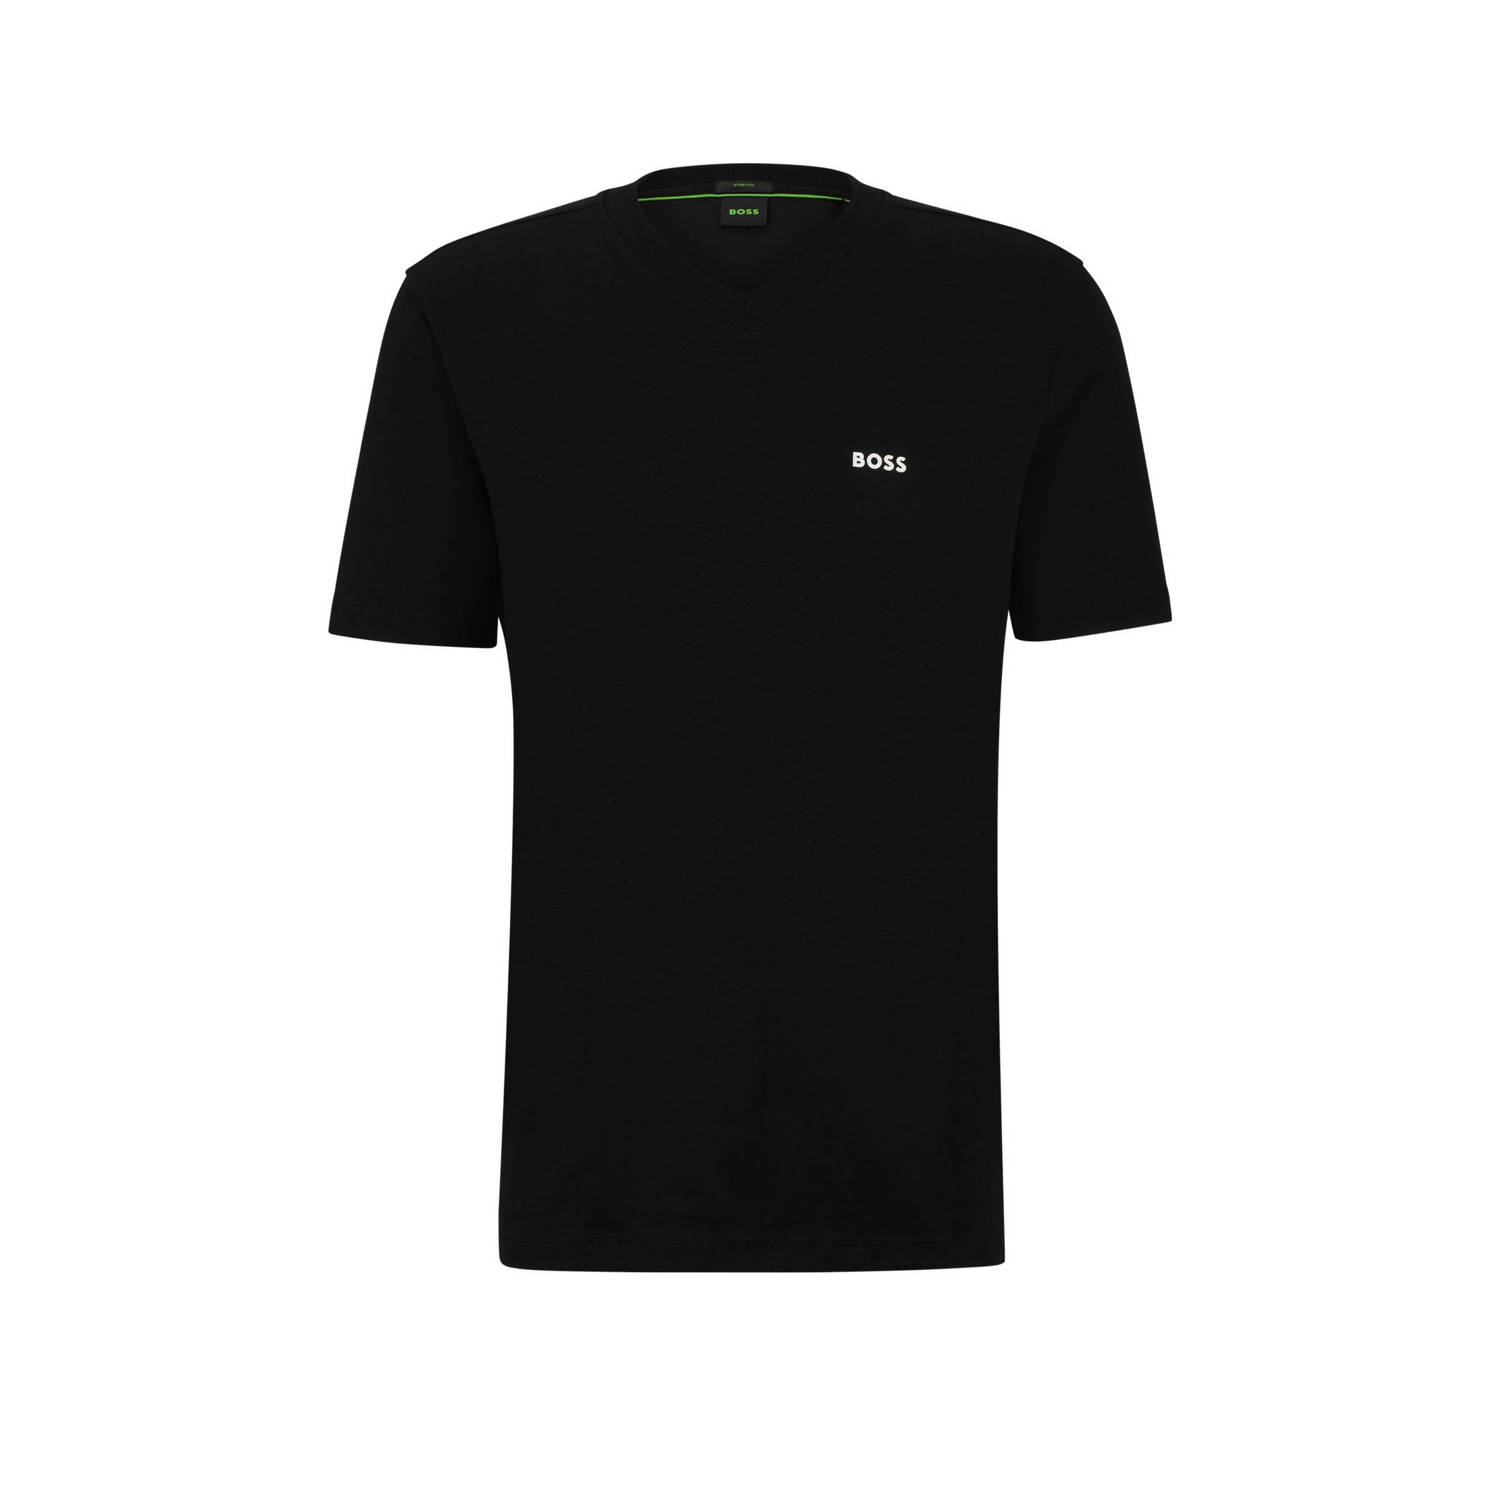 BOSS T-shirt met logo zw